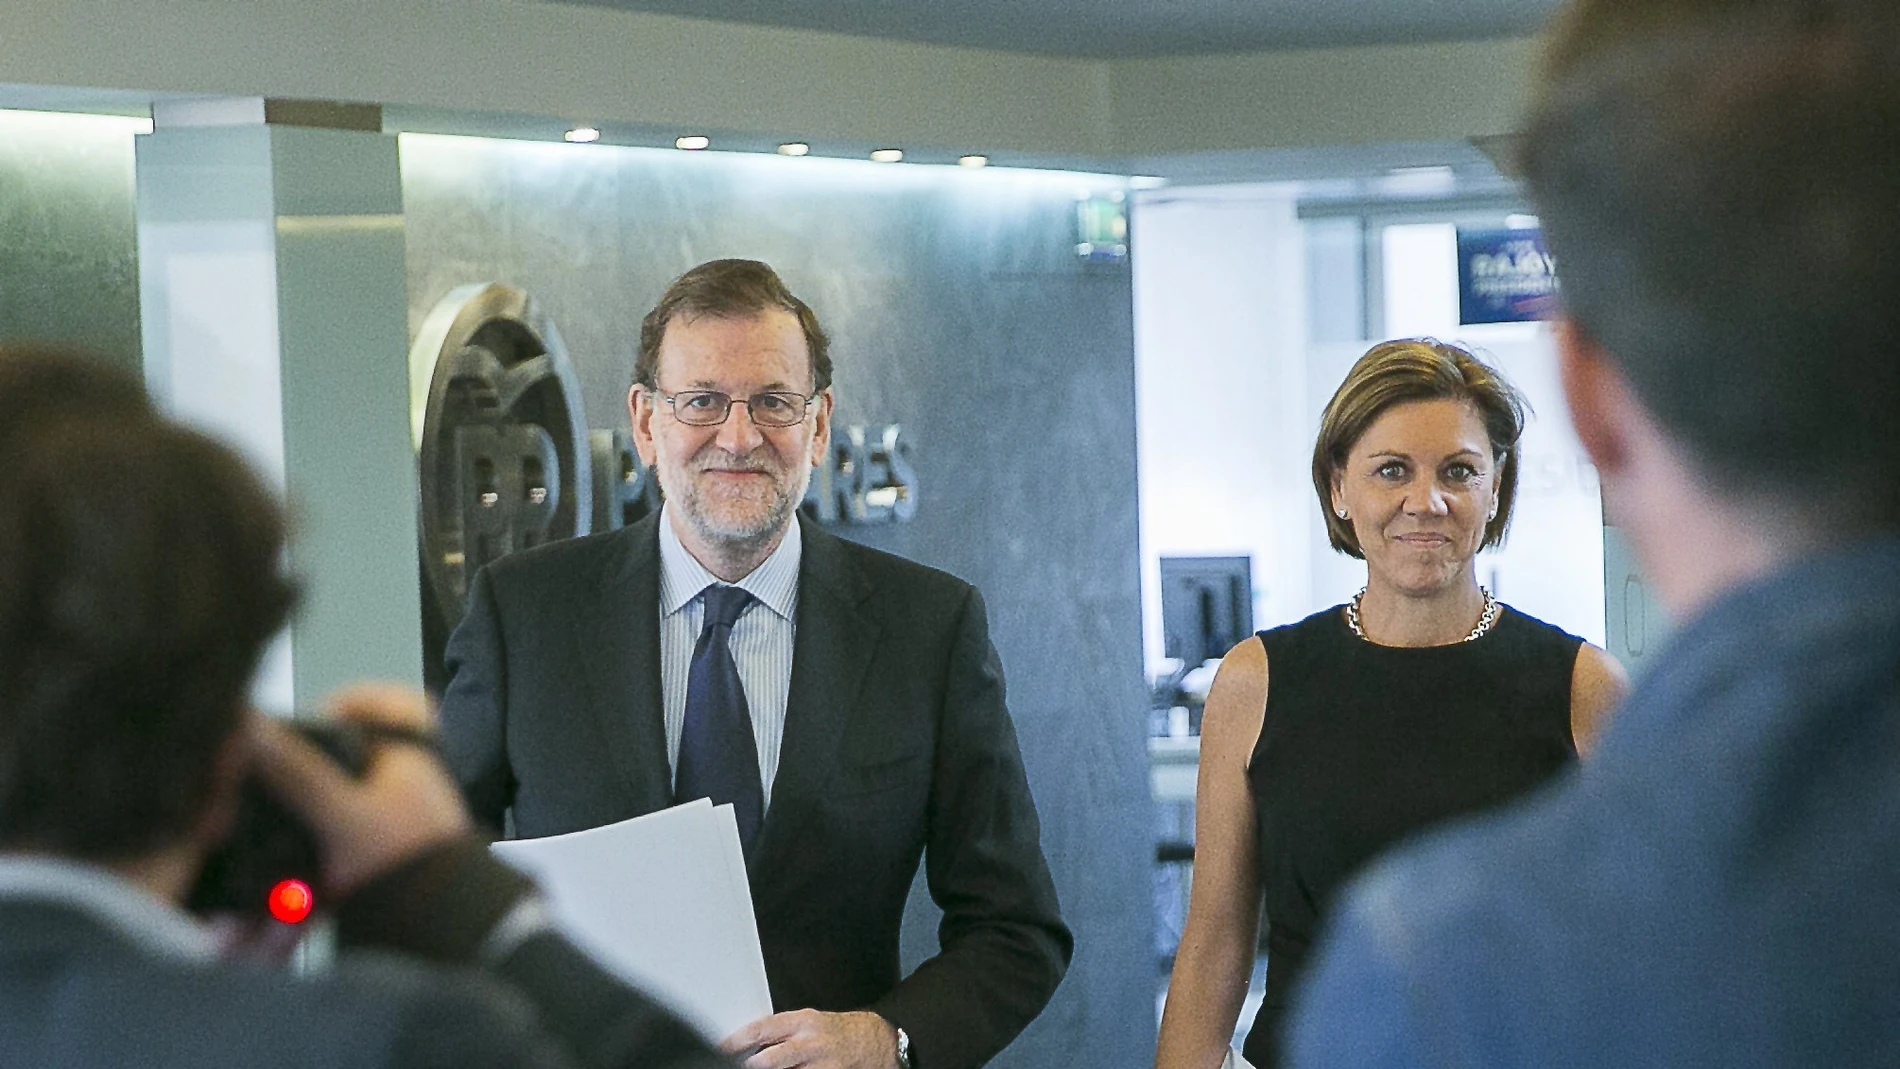 Fotografía facilitada por el PP del jefe del Ejecutivo en funciones y presidente del partido, Mariano Rajoy, y la secretaria general, María Dolores de Cospedal